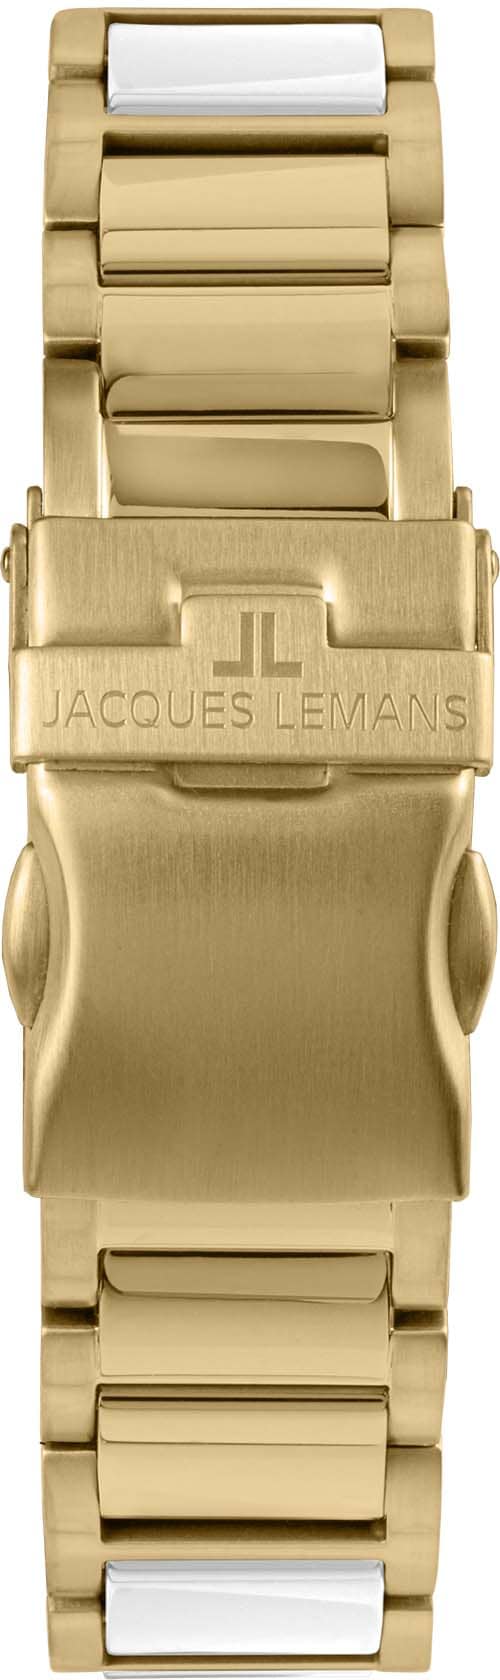 Jacques Lemans Keramikuhr »Liverpool, 42-12L«, Quarzuhr, Armbanduhr, Damenuhr, Datum, Leuchtzeiger